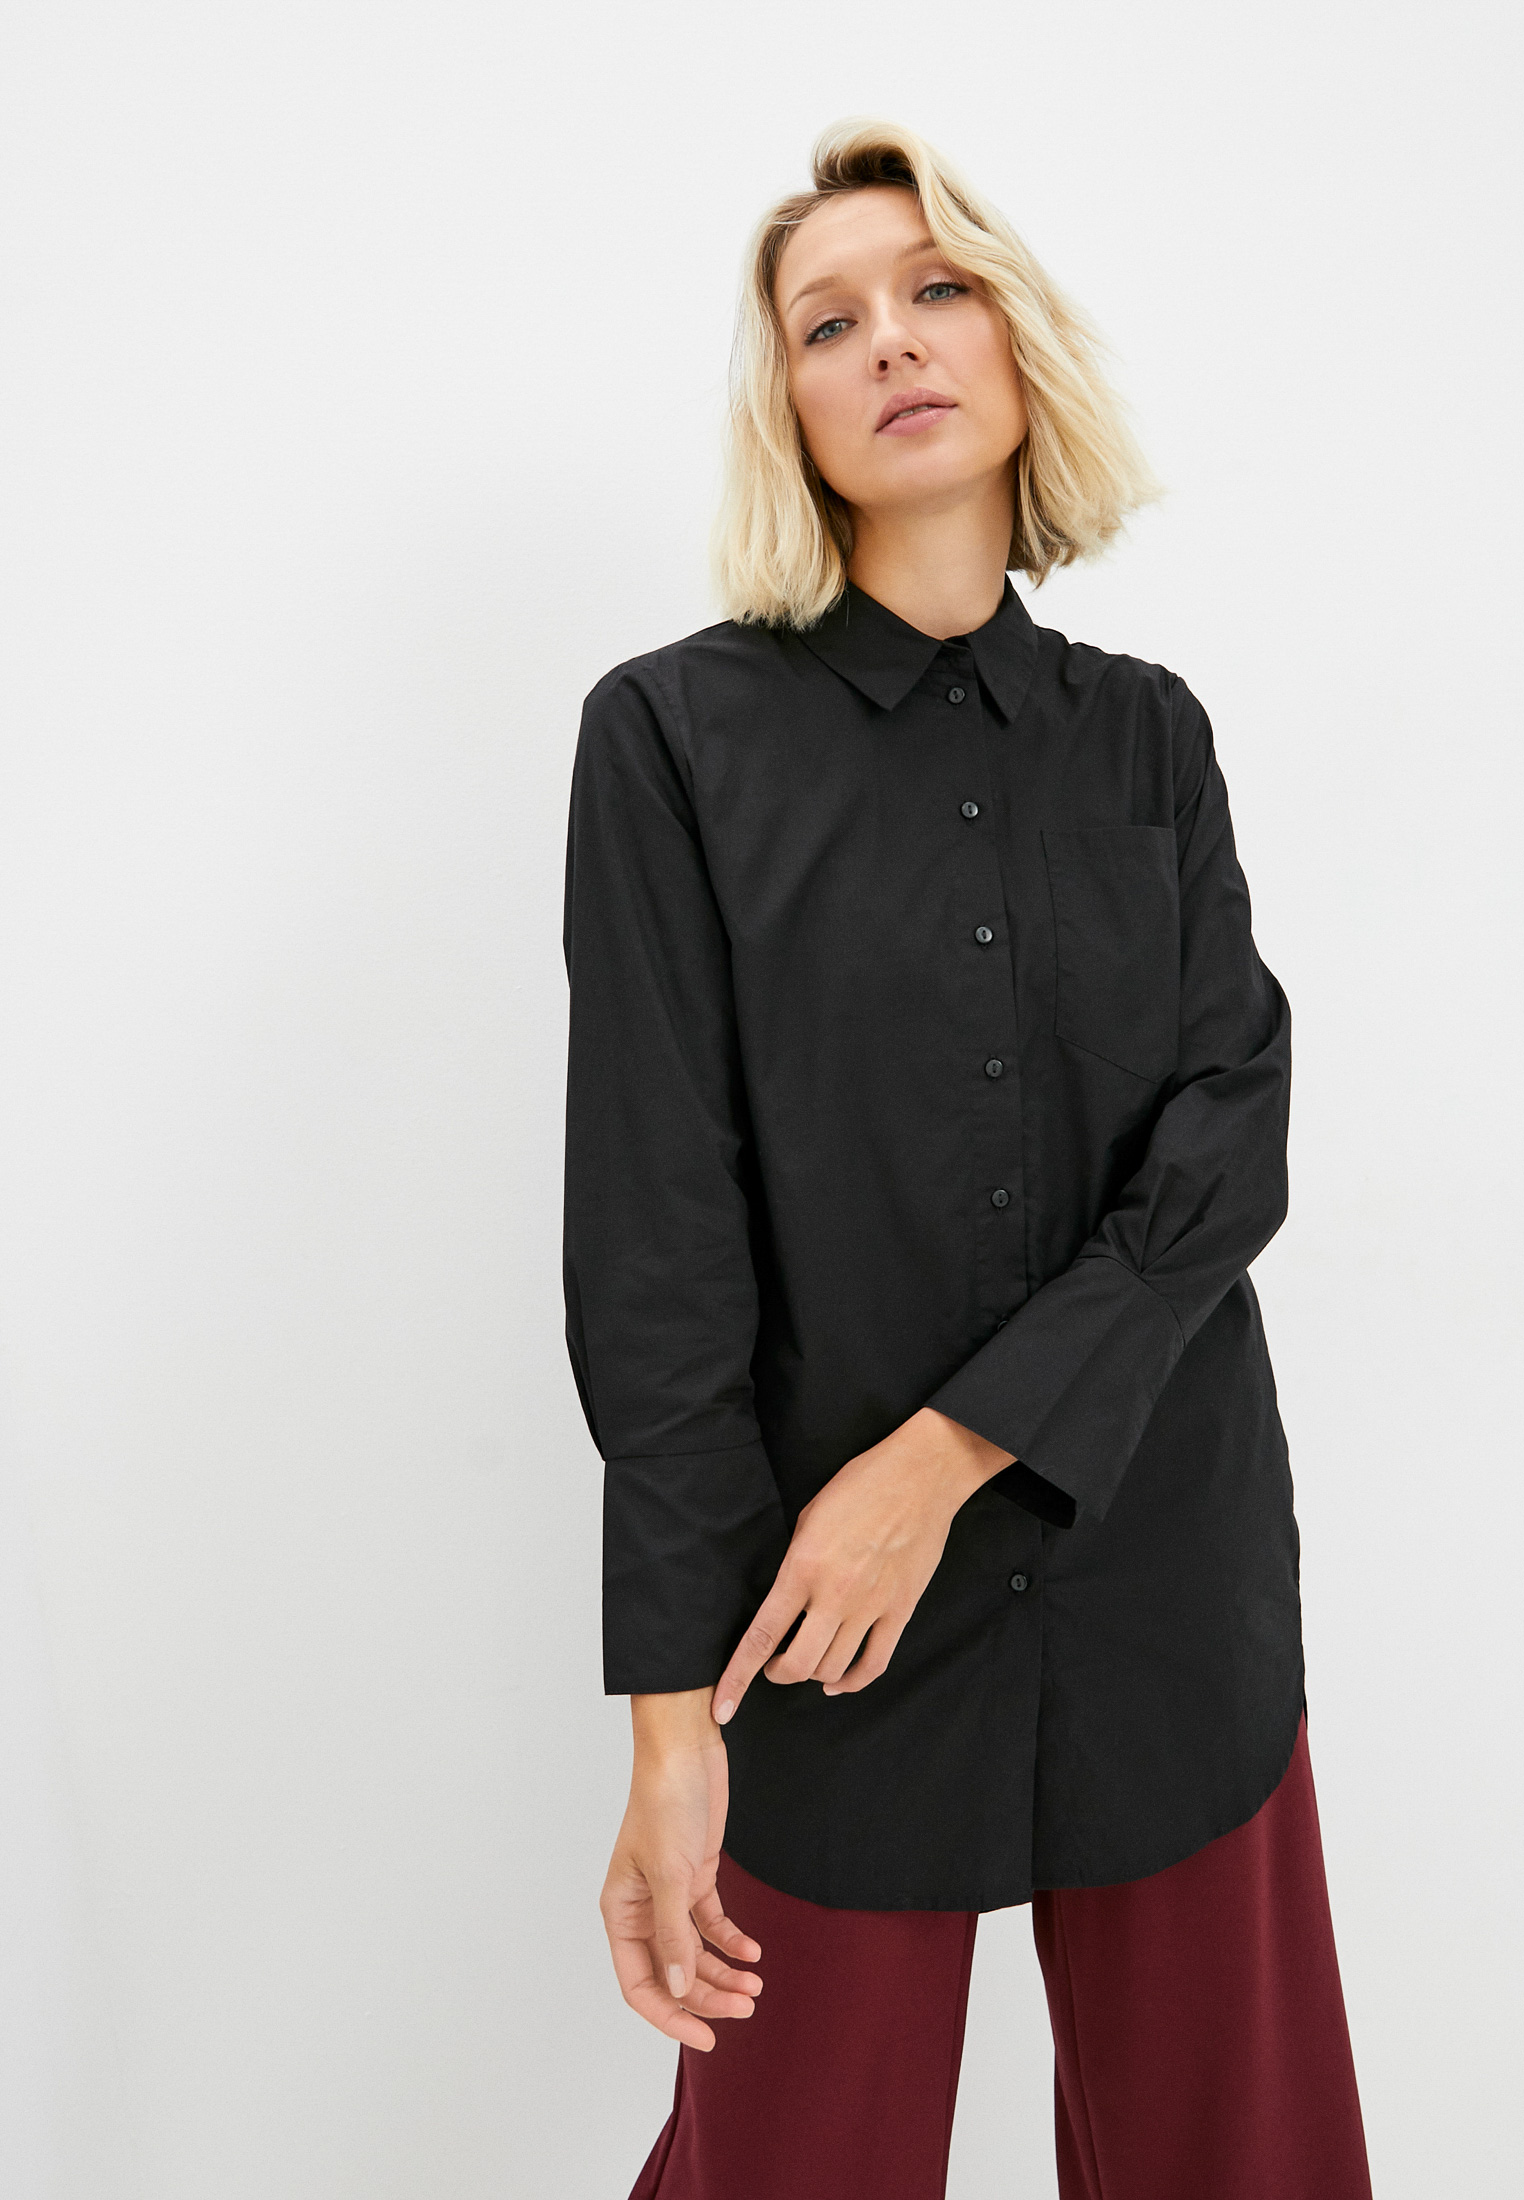 Рубашка JDY, цвет: черный, RTLAAO259101 — купить в интернет-магазине Lamoda